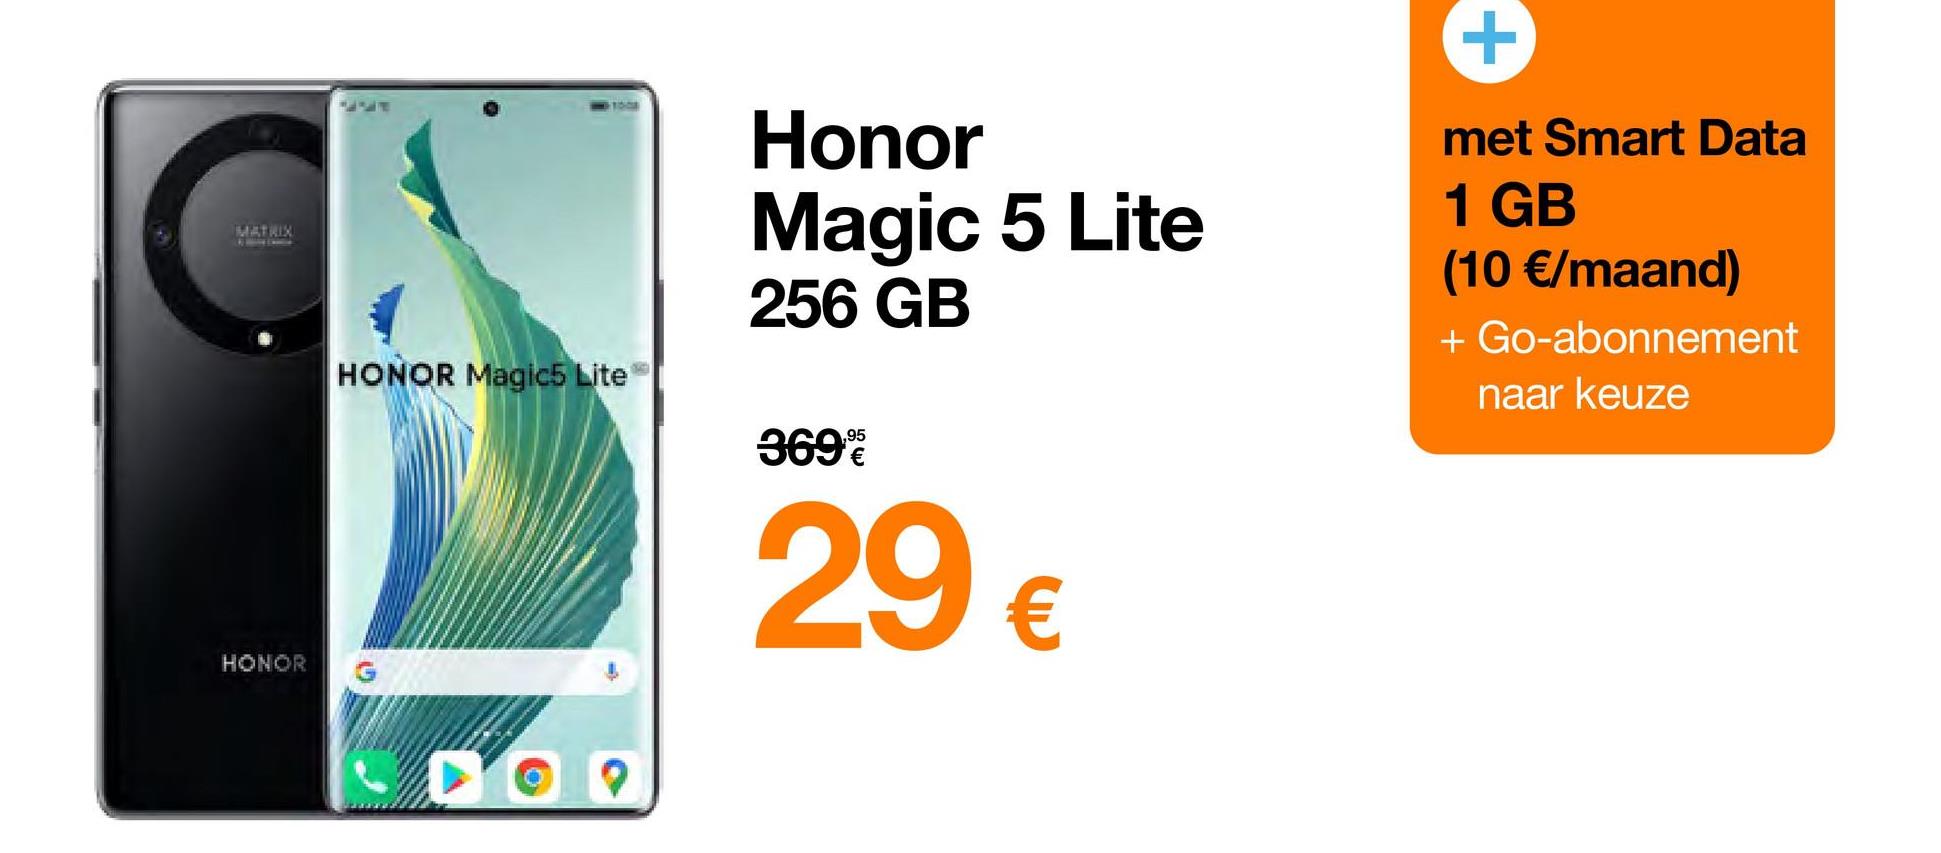 MATRIX
& My Expe
HONOR
HONOR Magic5 Lite
Honor
Magic 5 Lite
256 GB
369%
29 €
+
met Smart Data
1 GB
(10 €/maand)
+ Go-abonnement
naar keuze